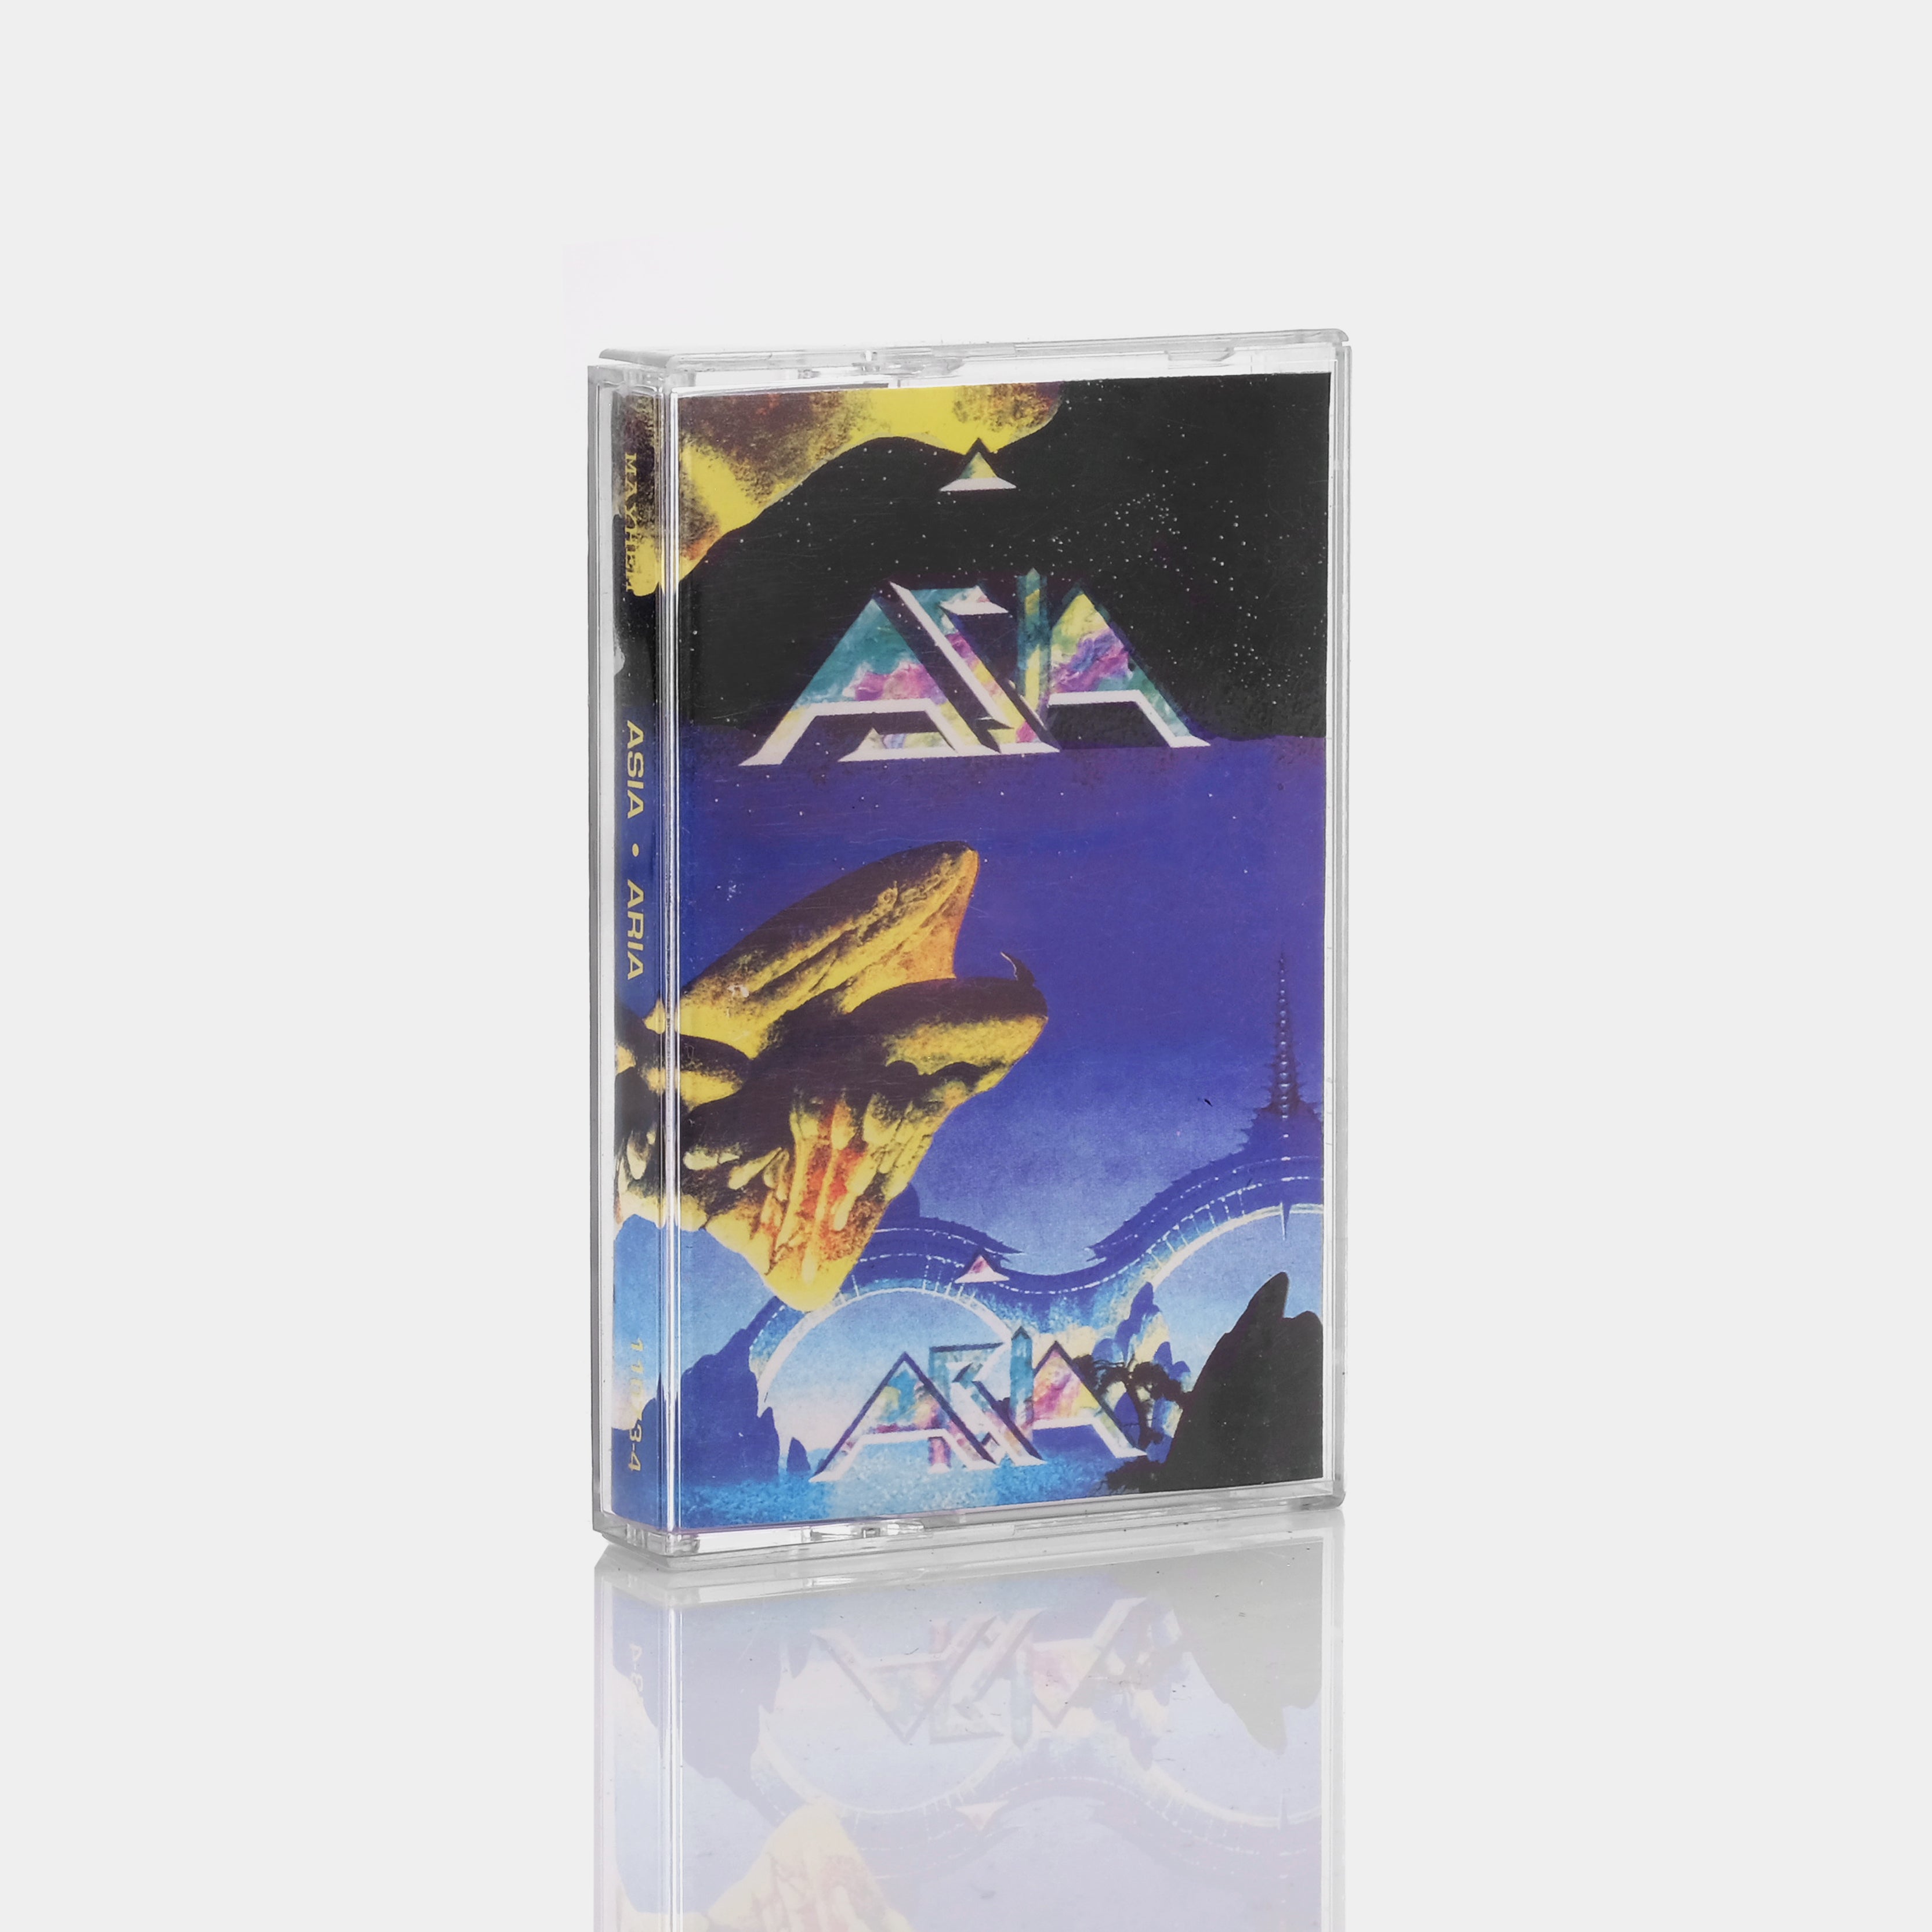 Asia - Aria Cassette Tape